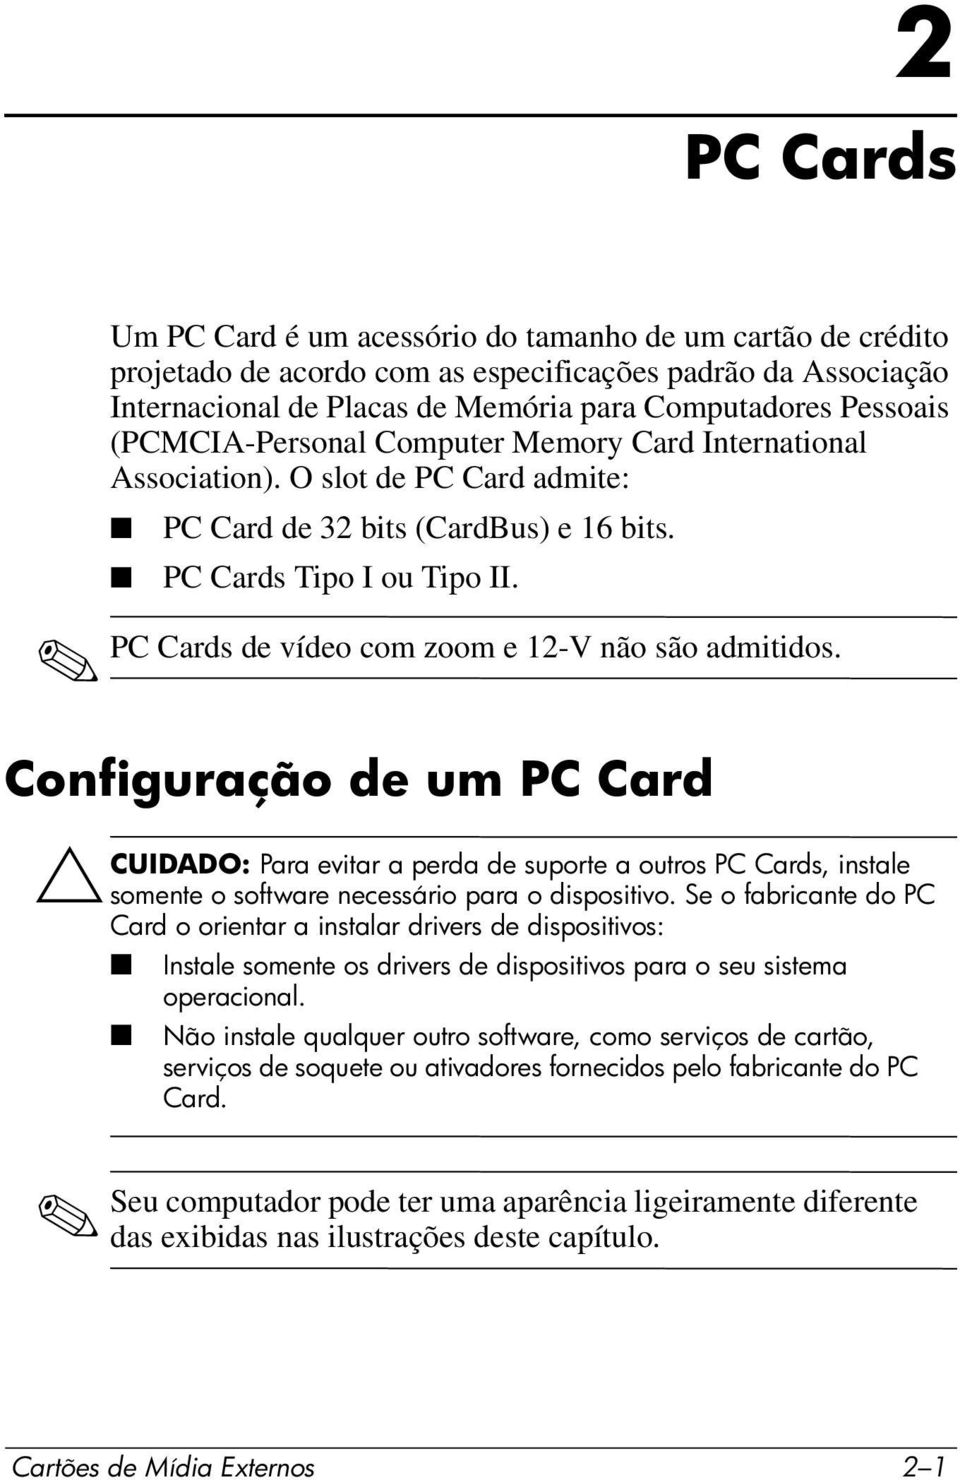 PC Cards de vídeo com zoom e 12-V não são admitidos. Configuração de um PC Card ÄCUIDADO: Para evitar a perda de suporte a outros PC Cards, instale somente o software necessário para o dispositivo.